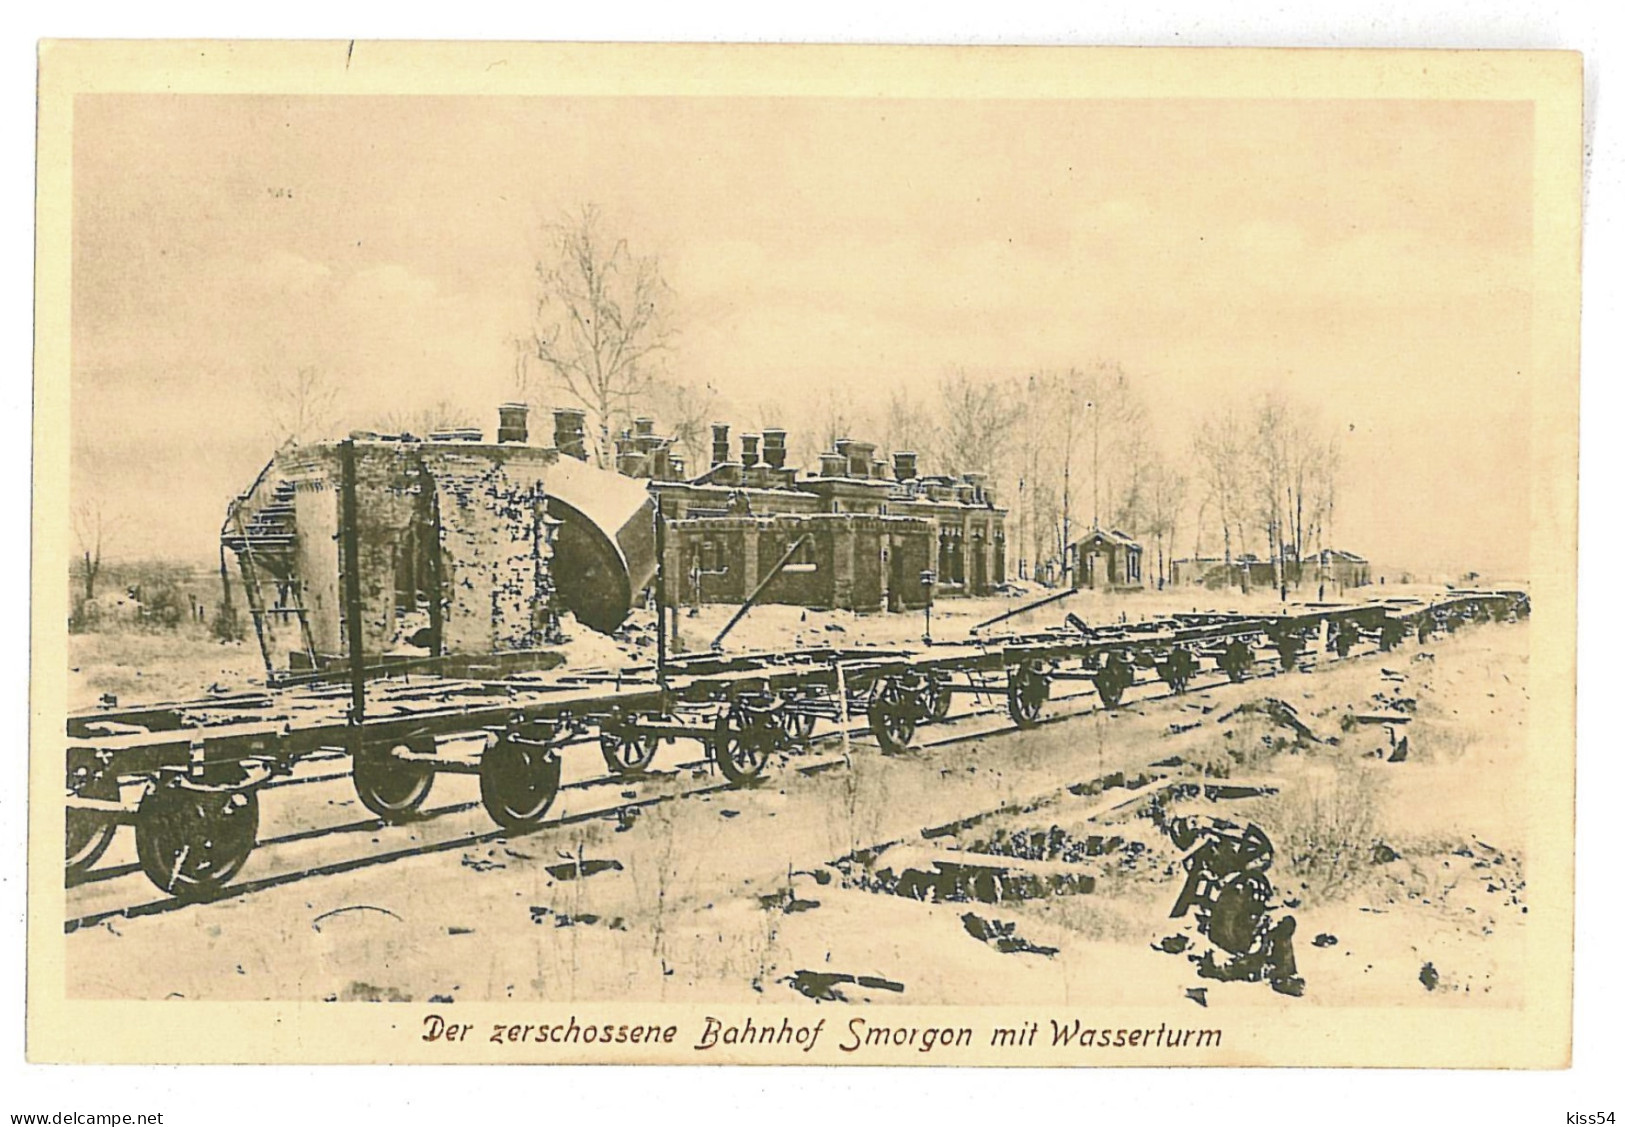 BL 12 - 10042 SMARHON, Belarus, Smorgon, Railway Station - Old Postcard - Unused - Belarus